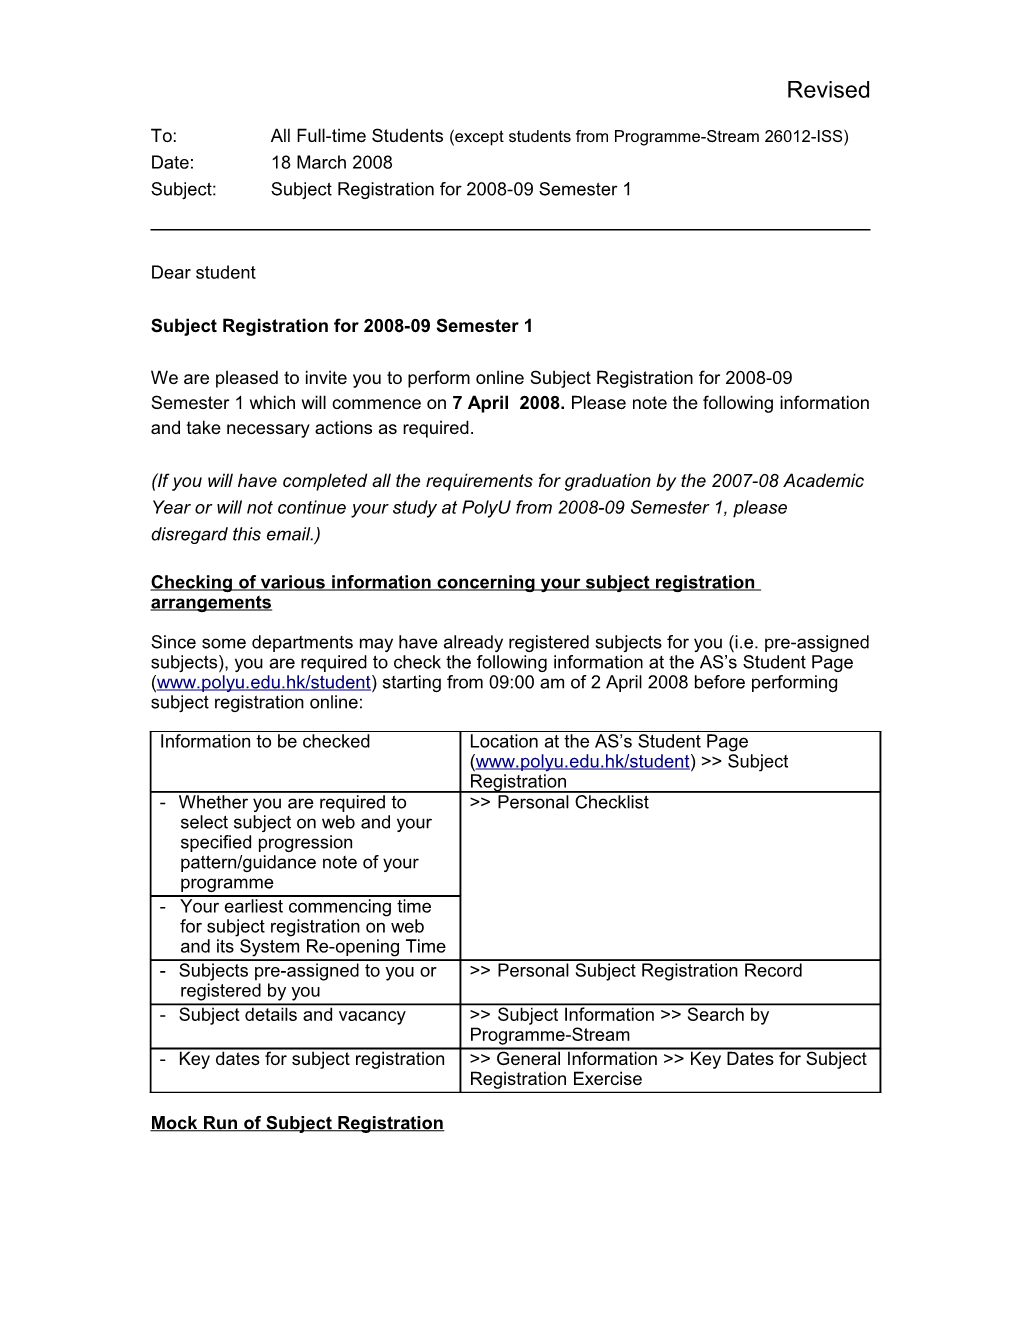 Subject Registration for 2008-09 Semester 1